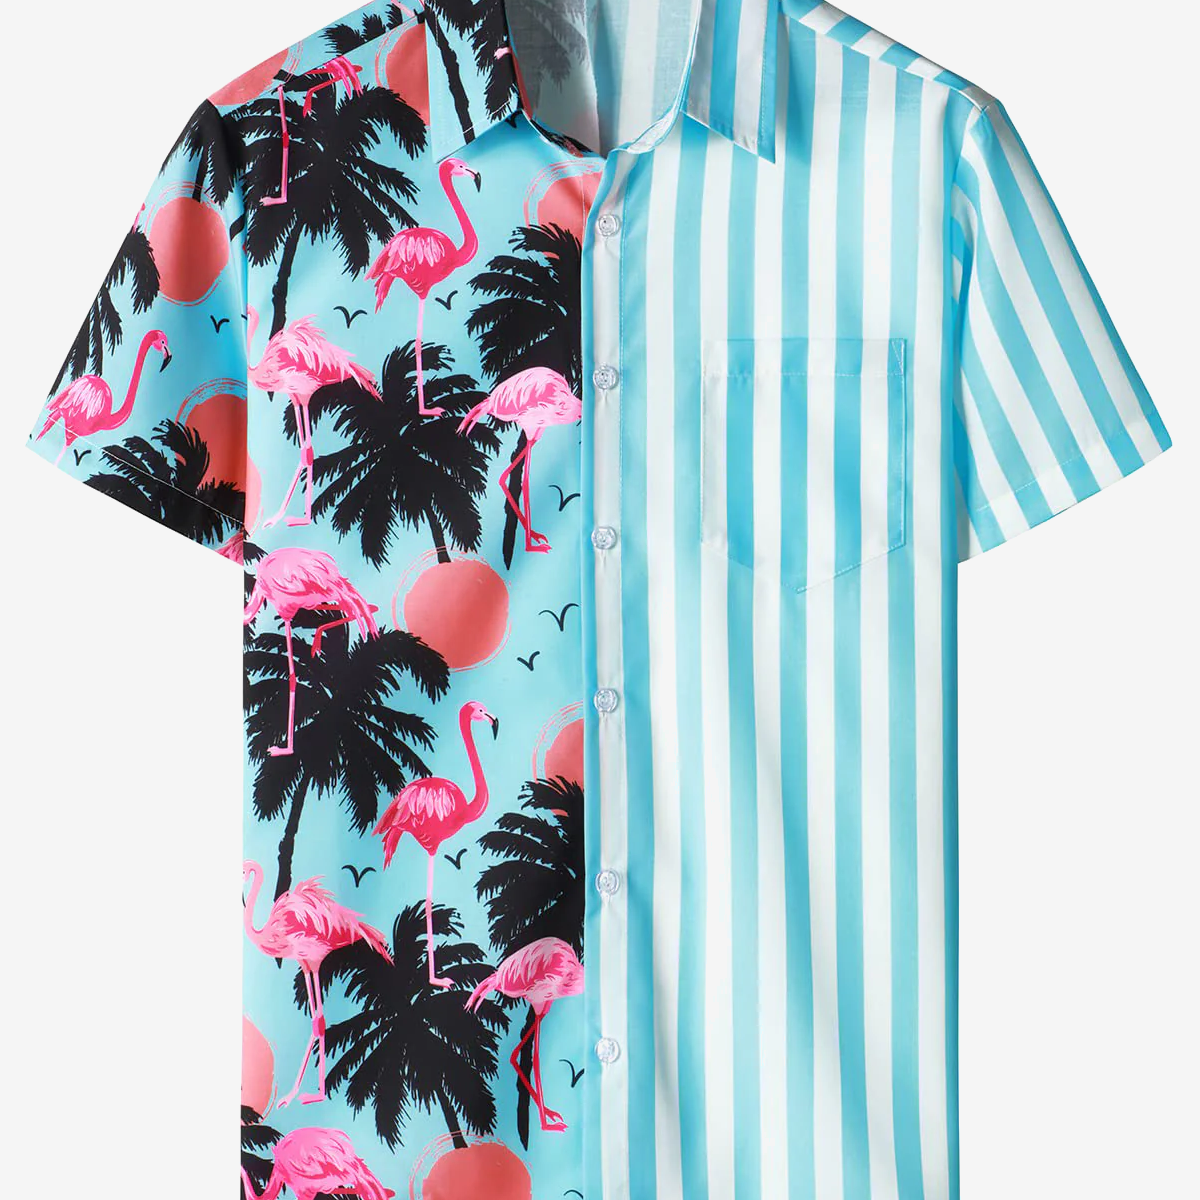 Camisa hawaiana de manga corta con estampado tropical de rayas azules y blancas de flamenco para hombre